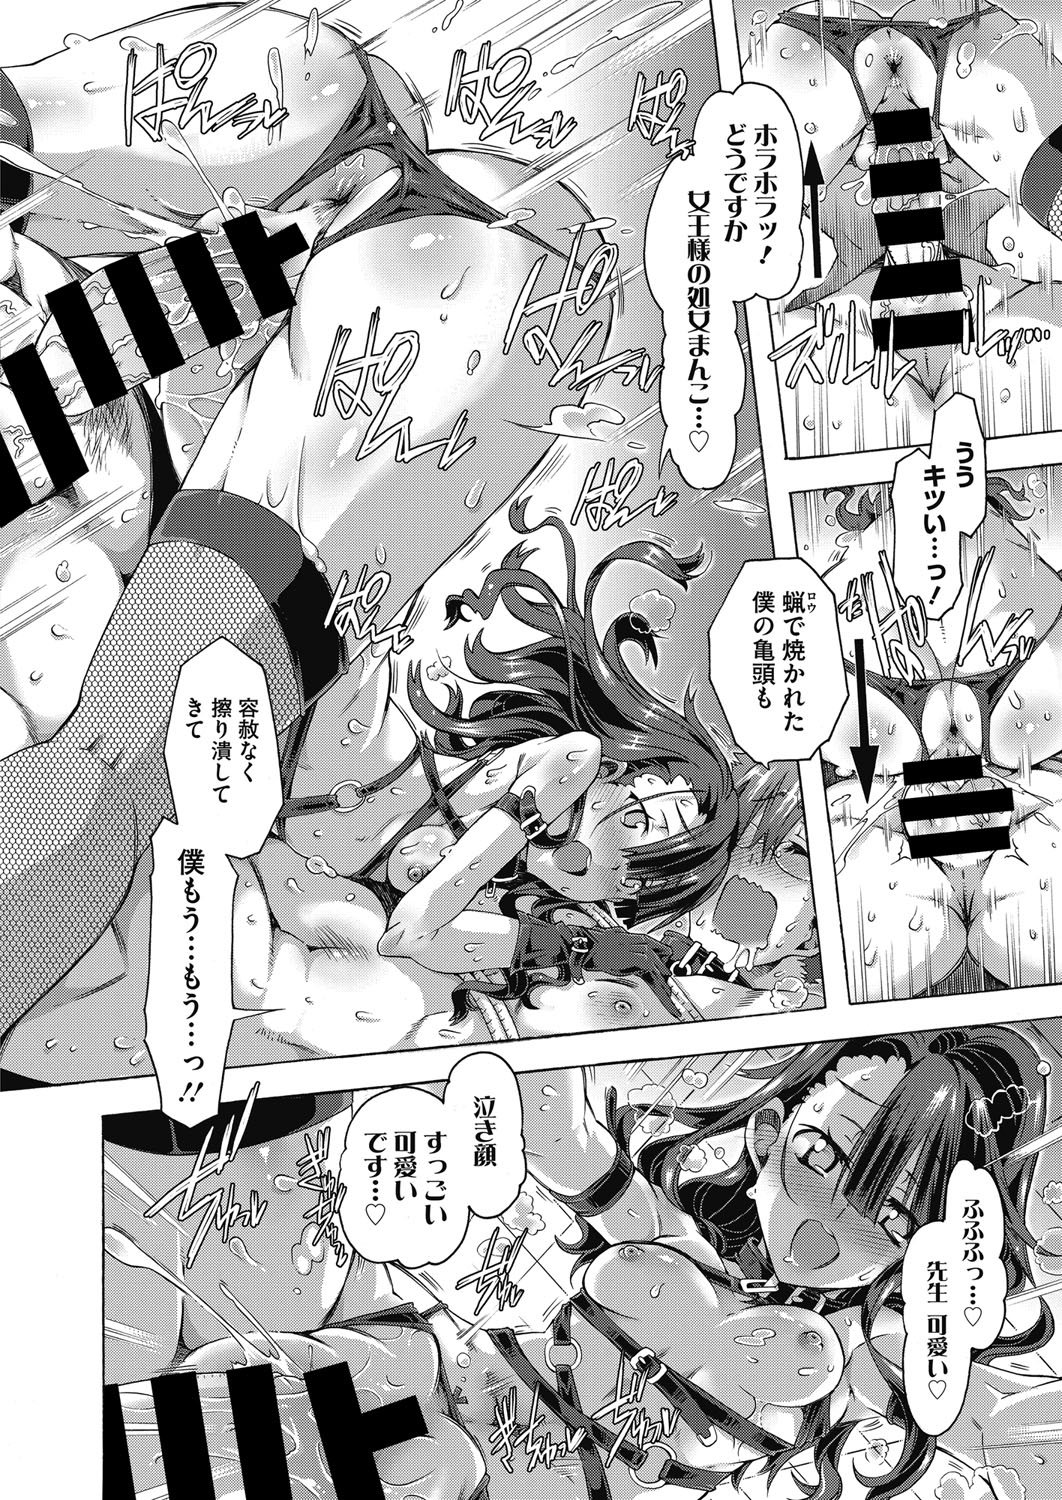 Web Manga Bangaichi Vol. 6 web 漫画ばんがいち Vol.6